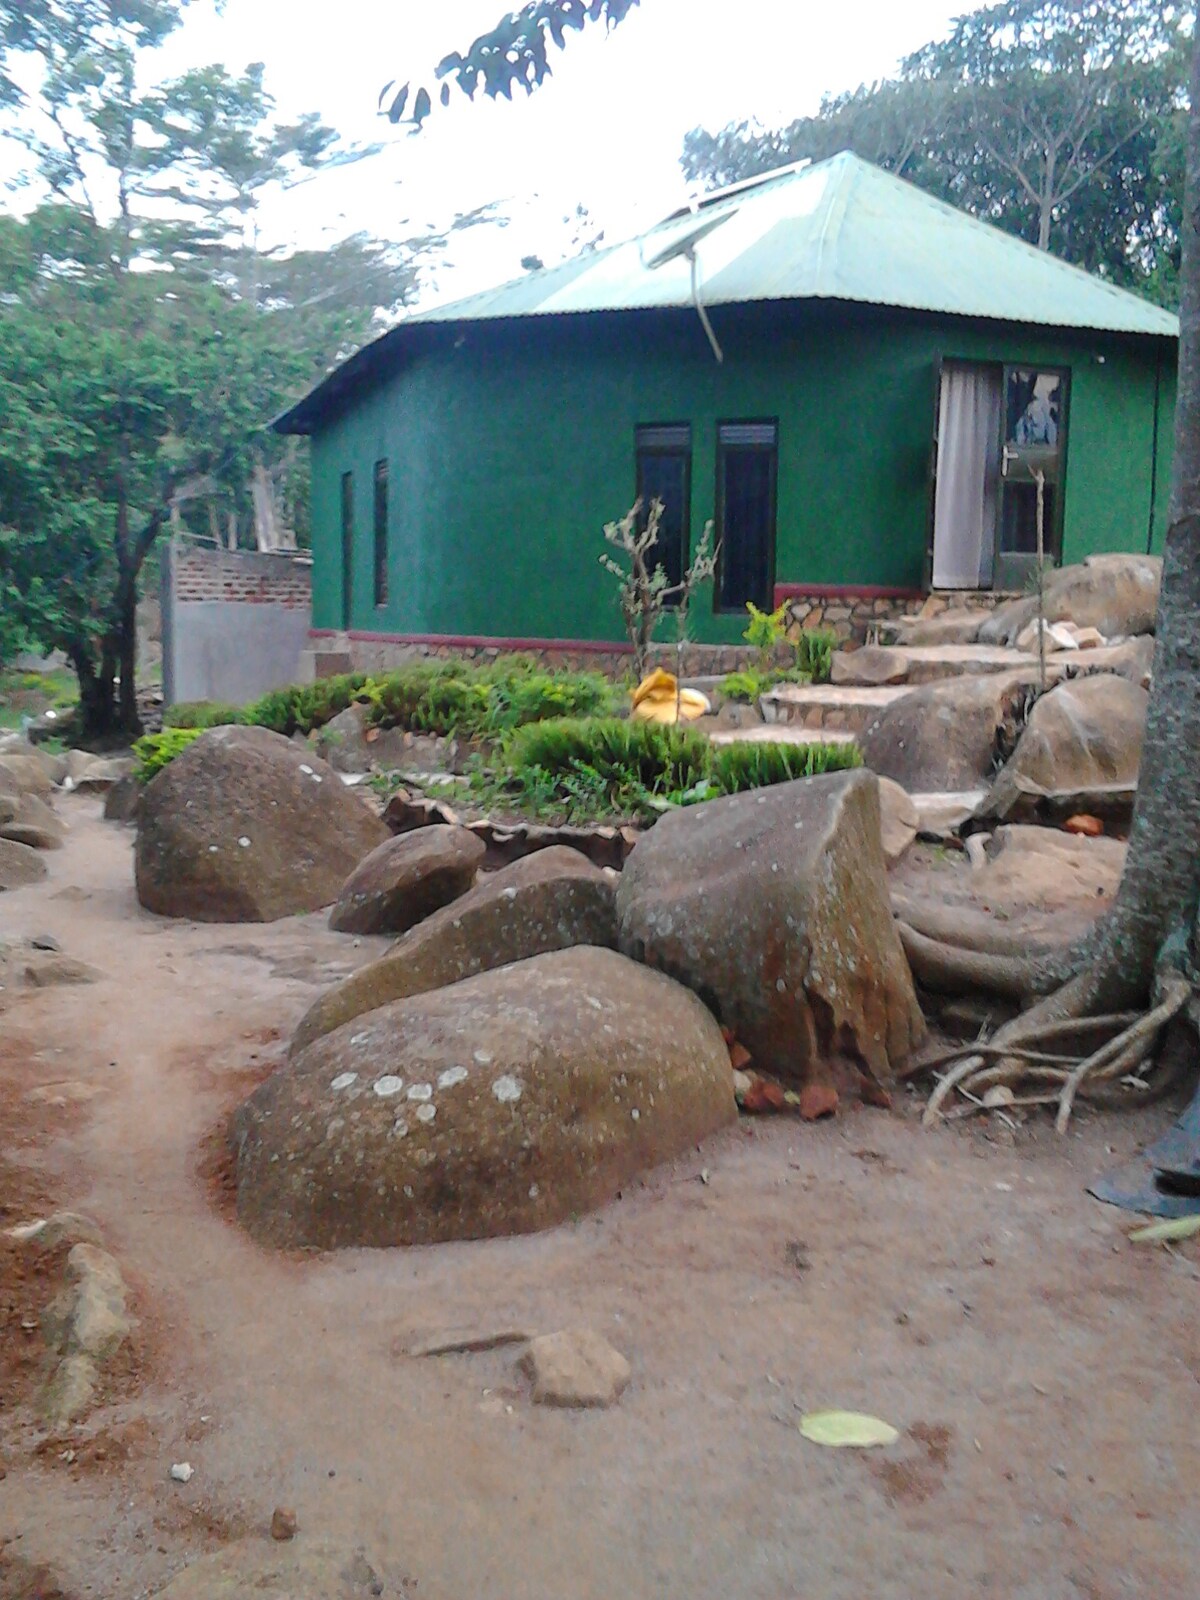 Cave garden cottages,  West Uganda